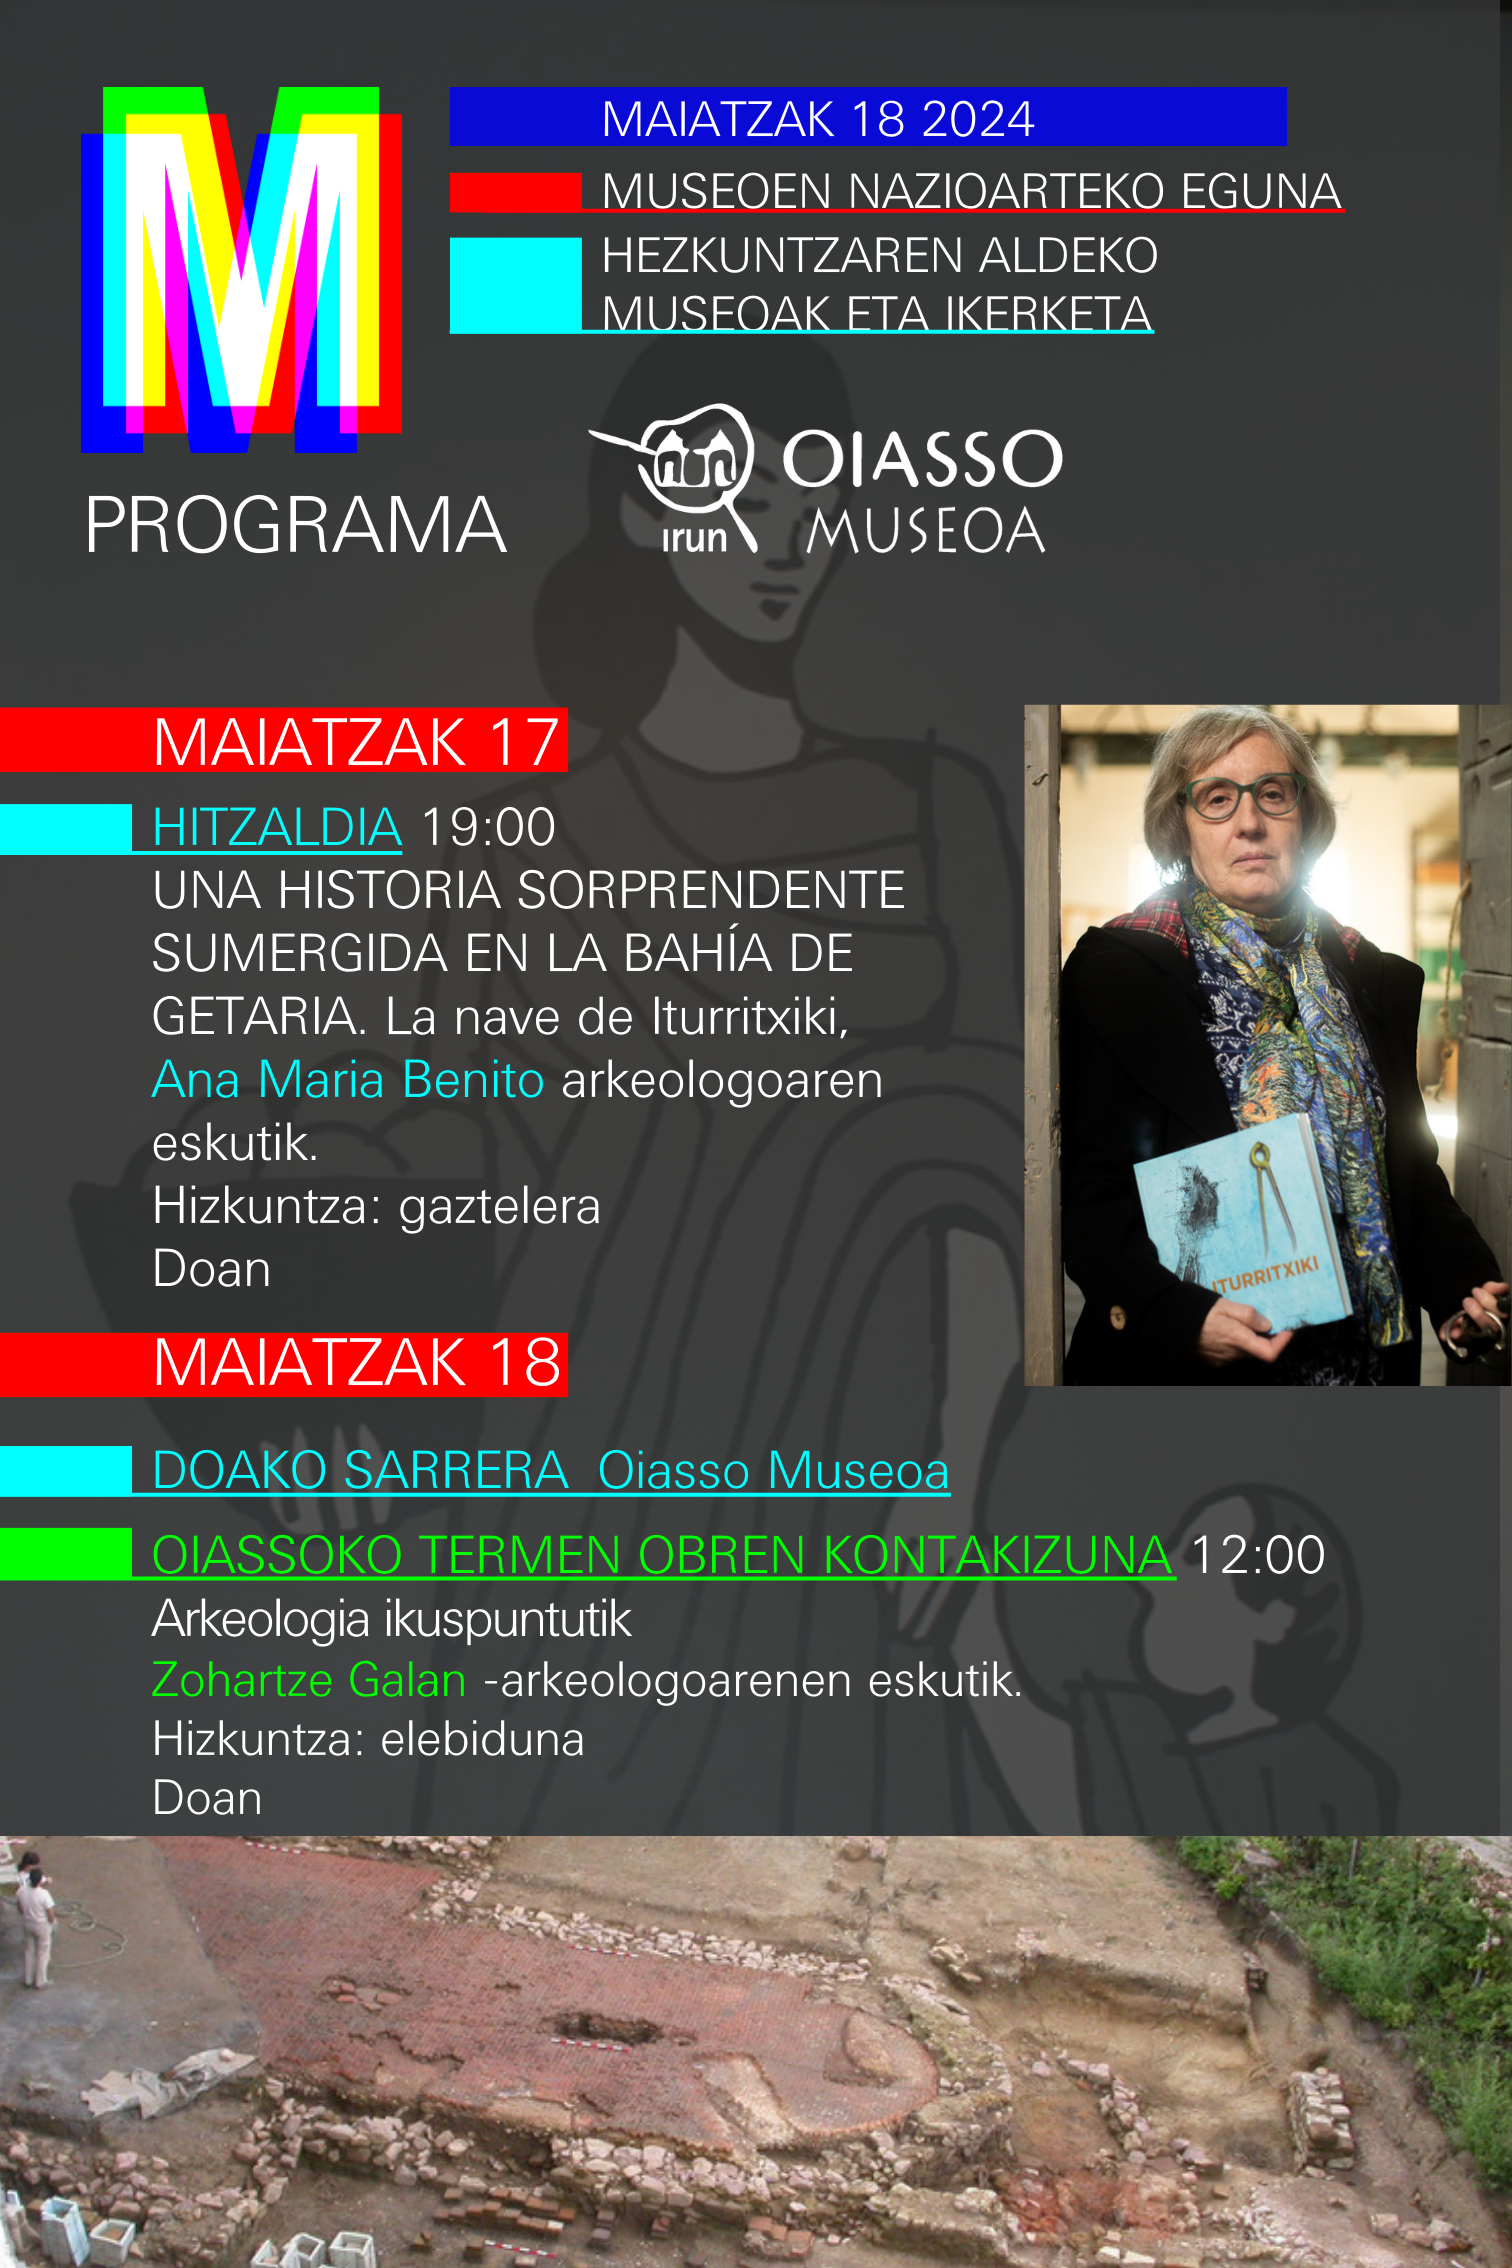 El museo Oiasso celebra el Día Internacional de los Museos con un ambicioso programa de citas